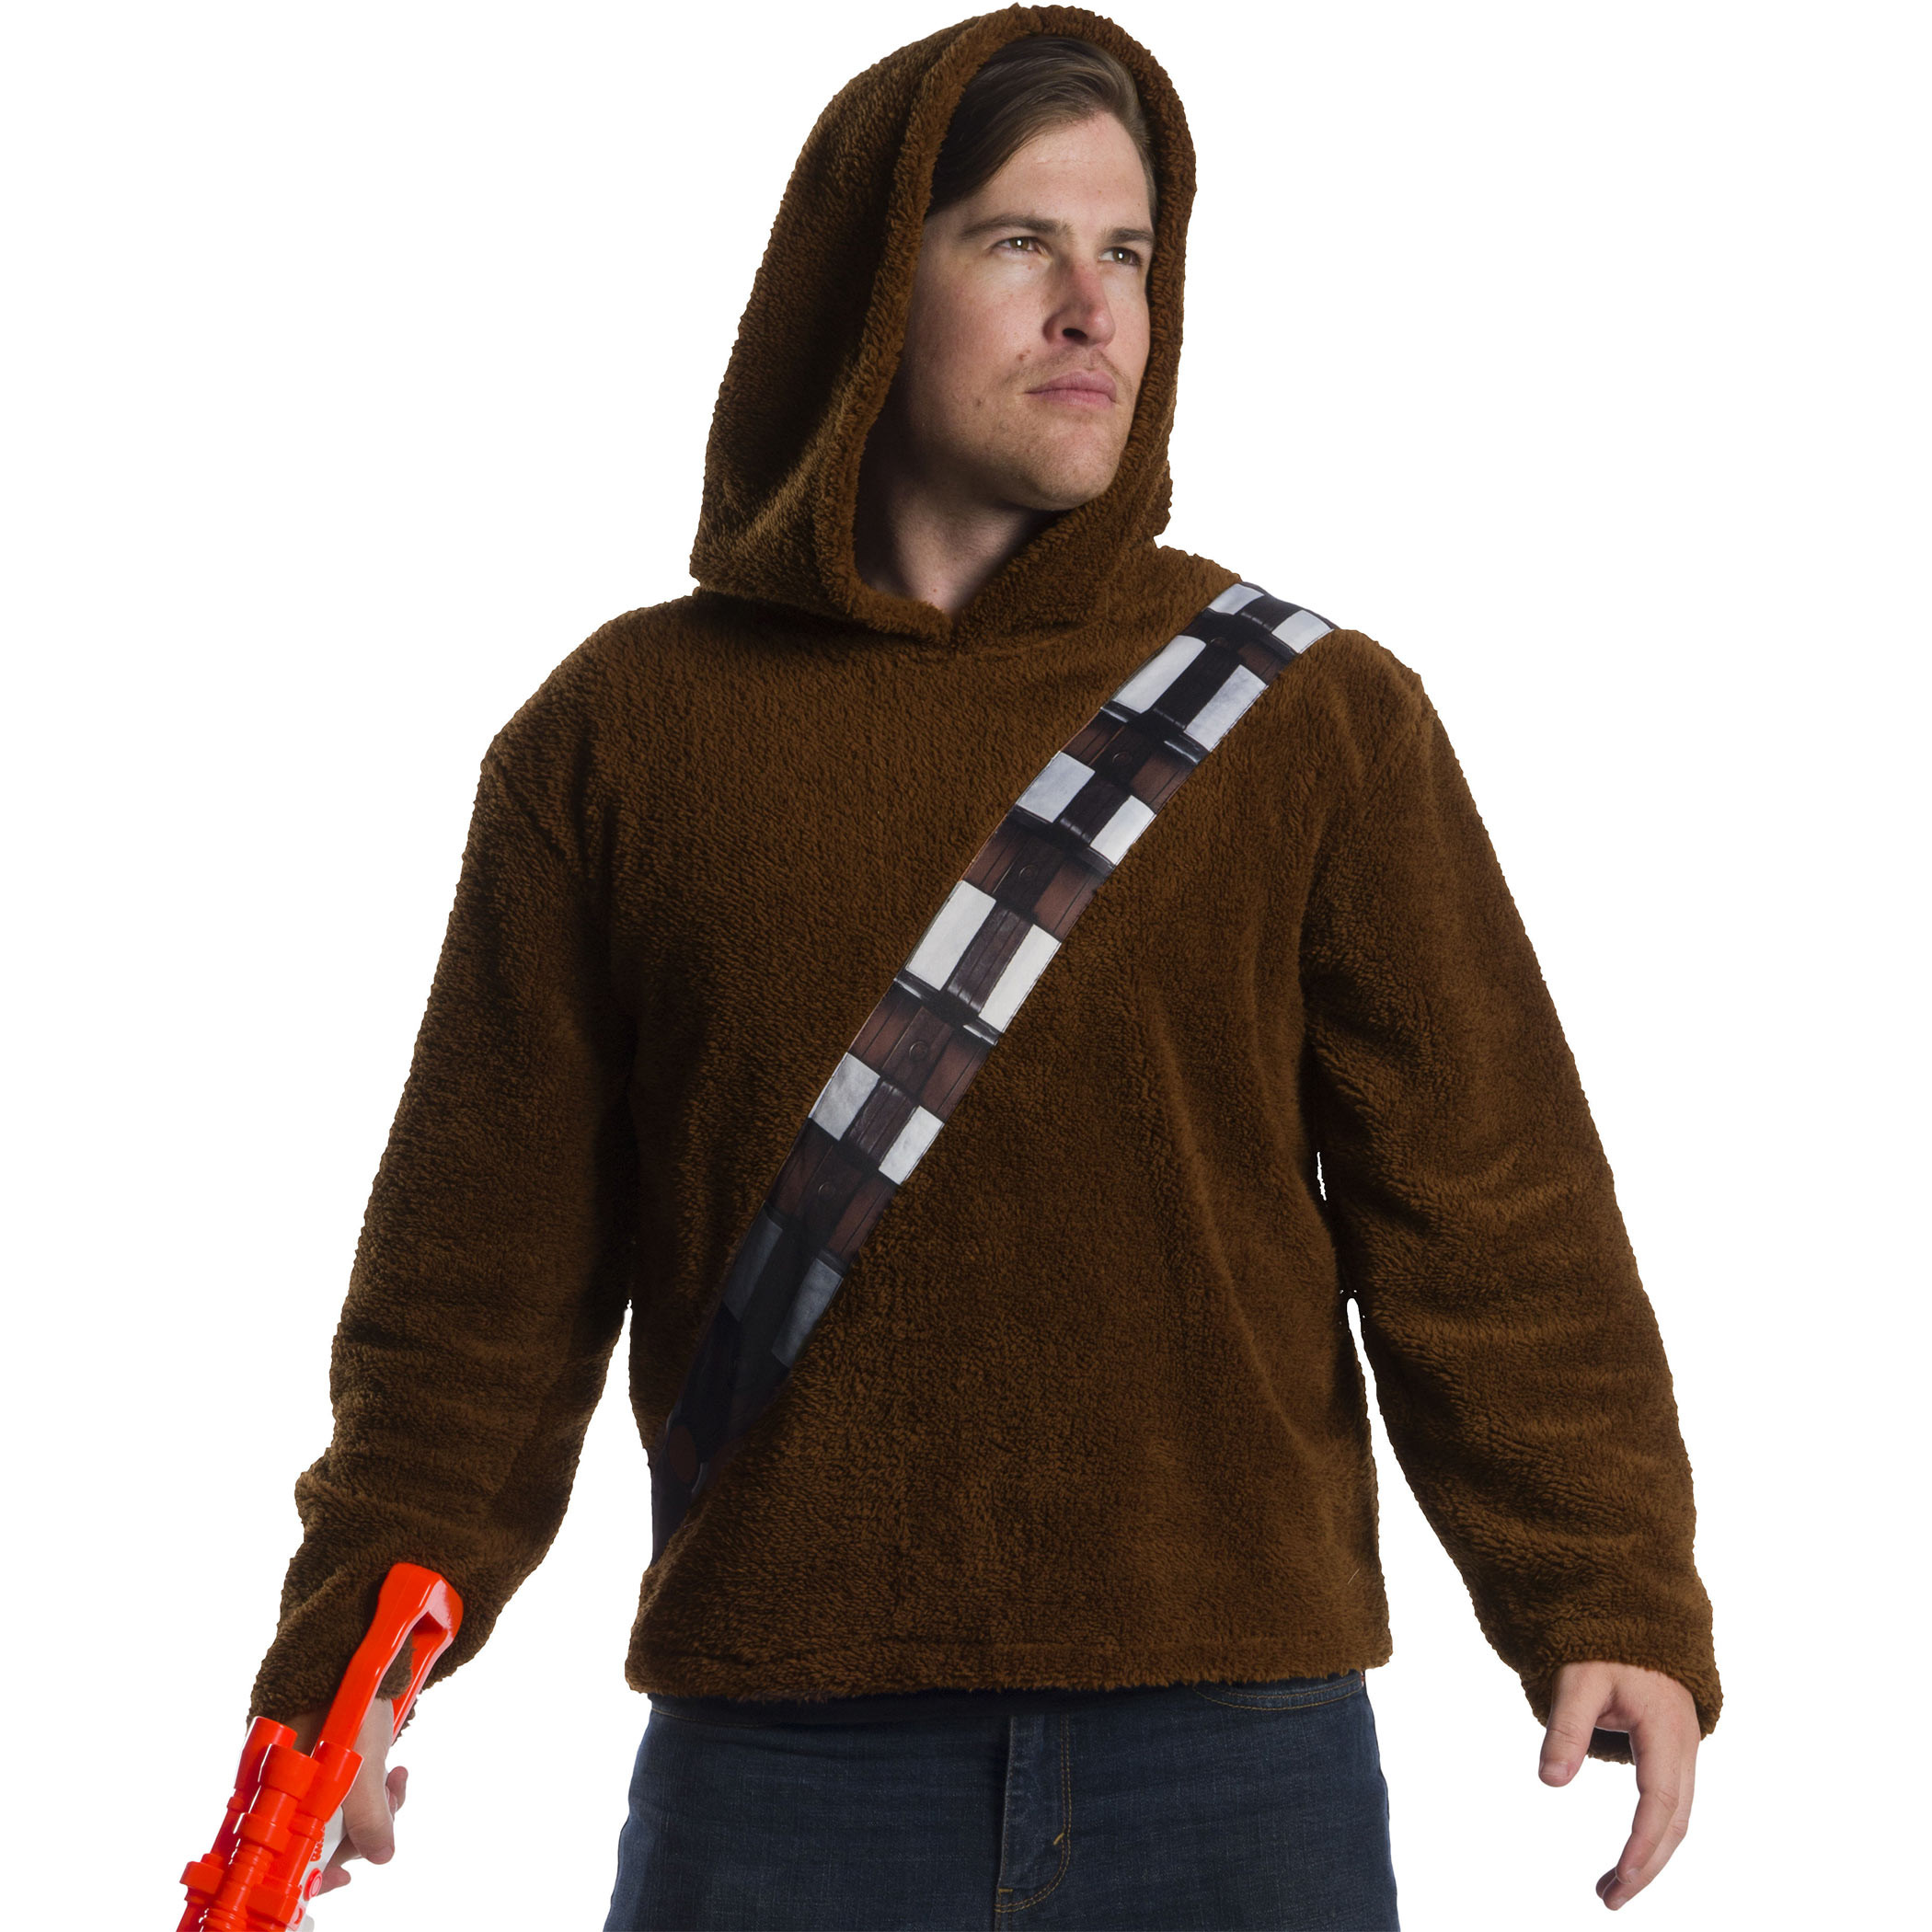 Star Wars Chewbacca Costume Hoodie